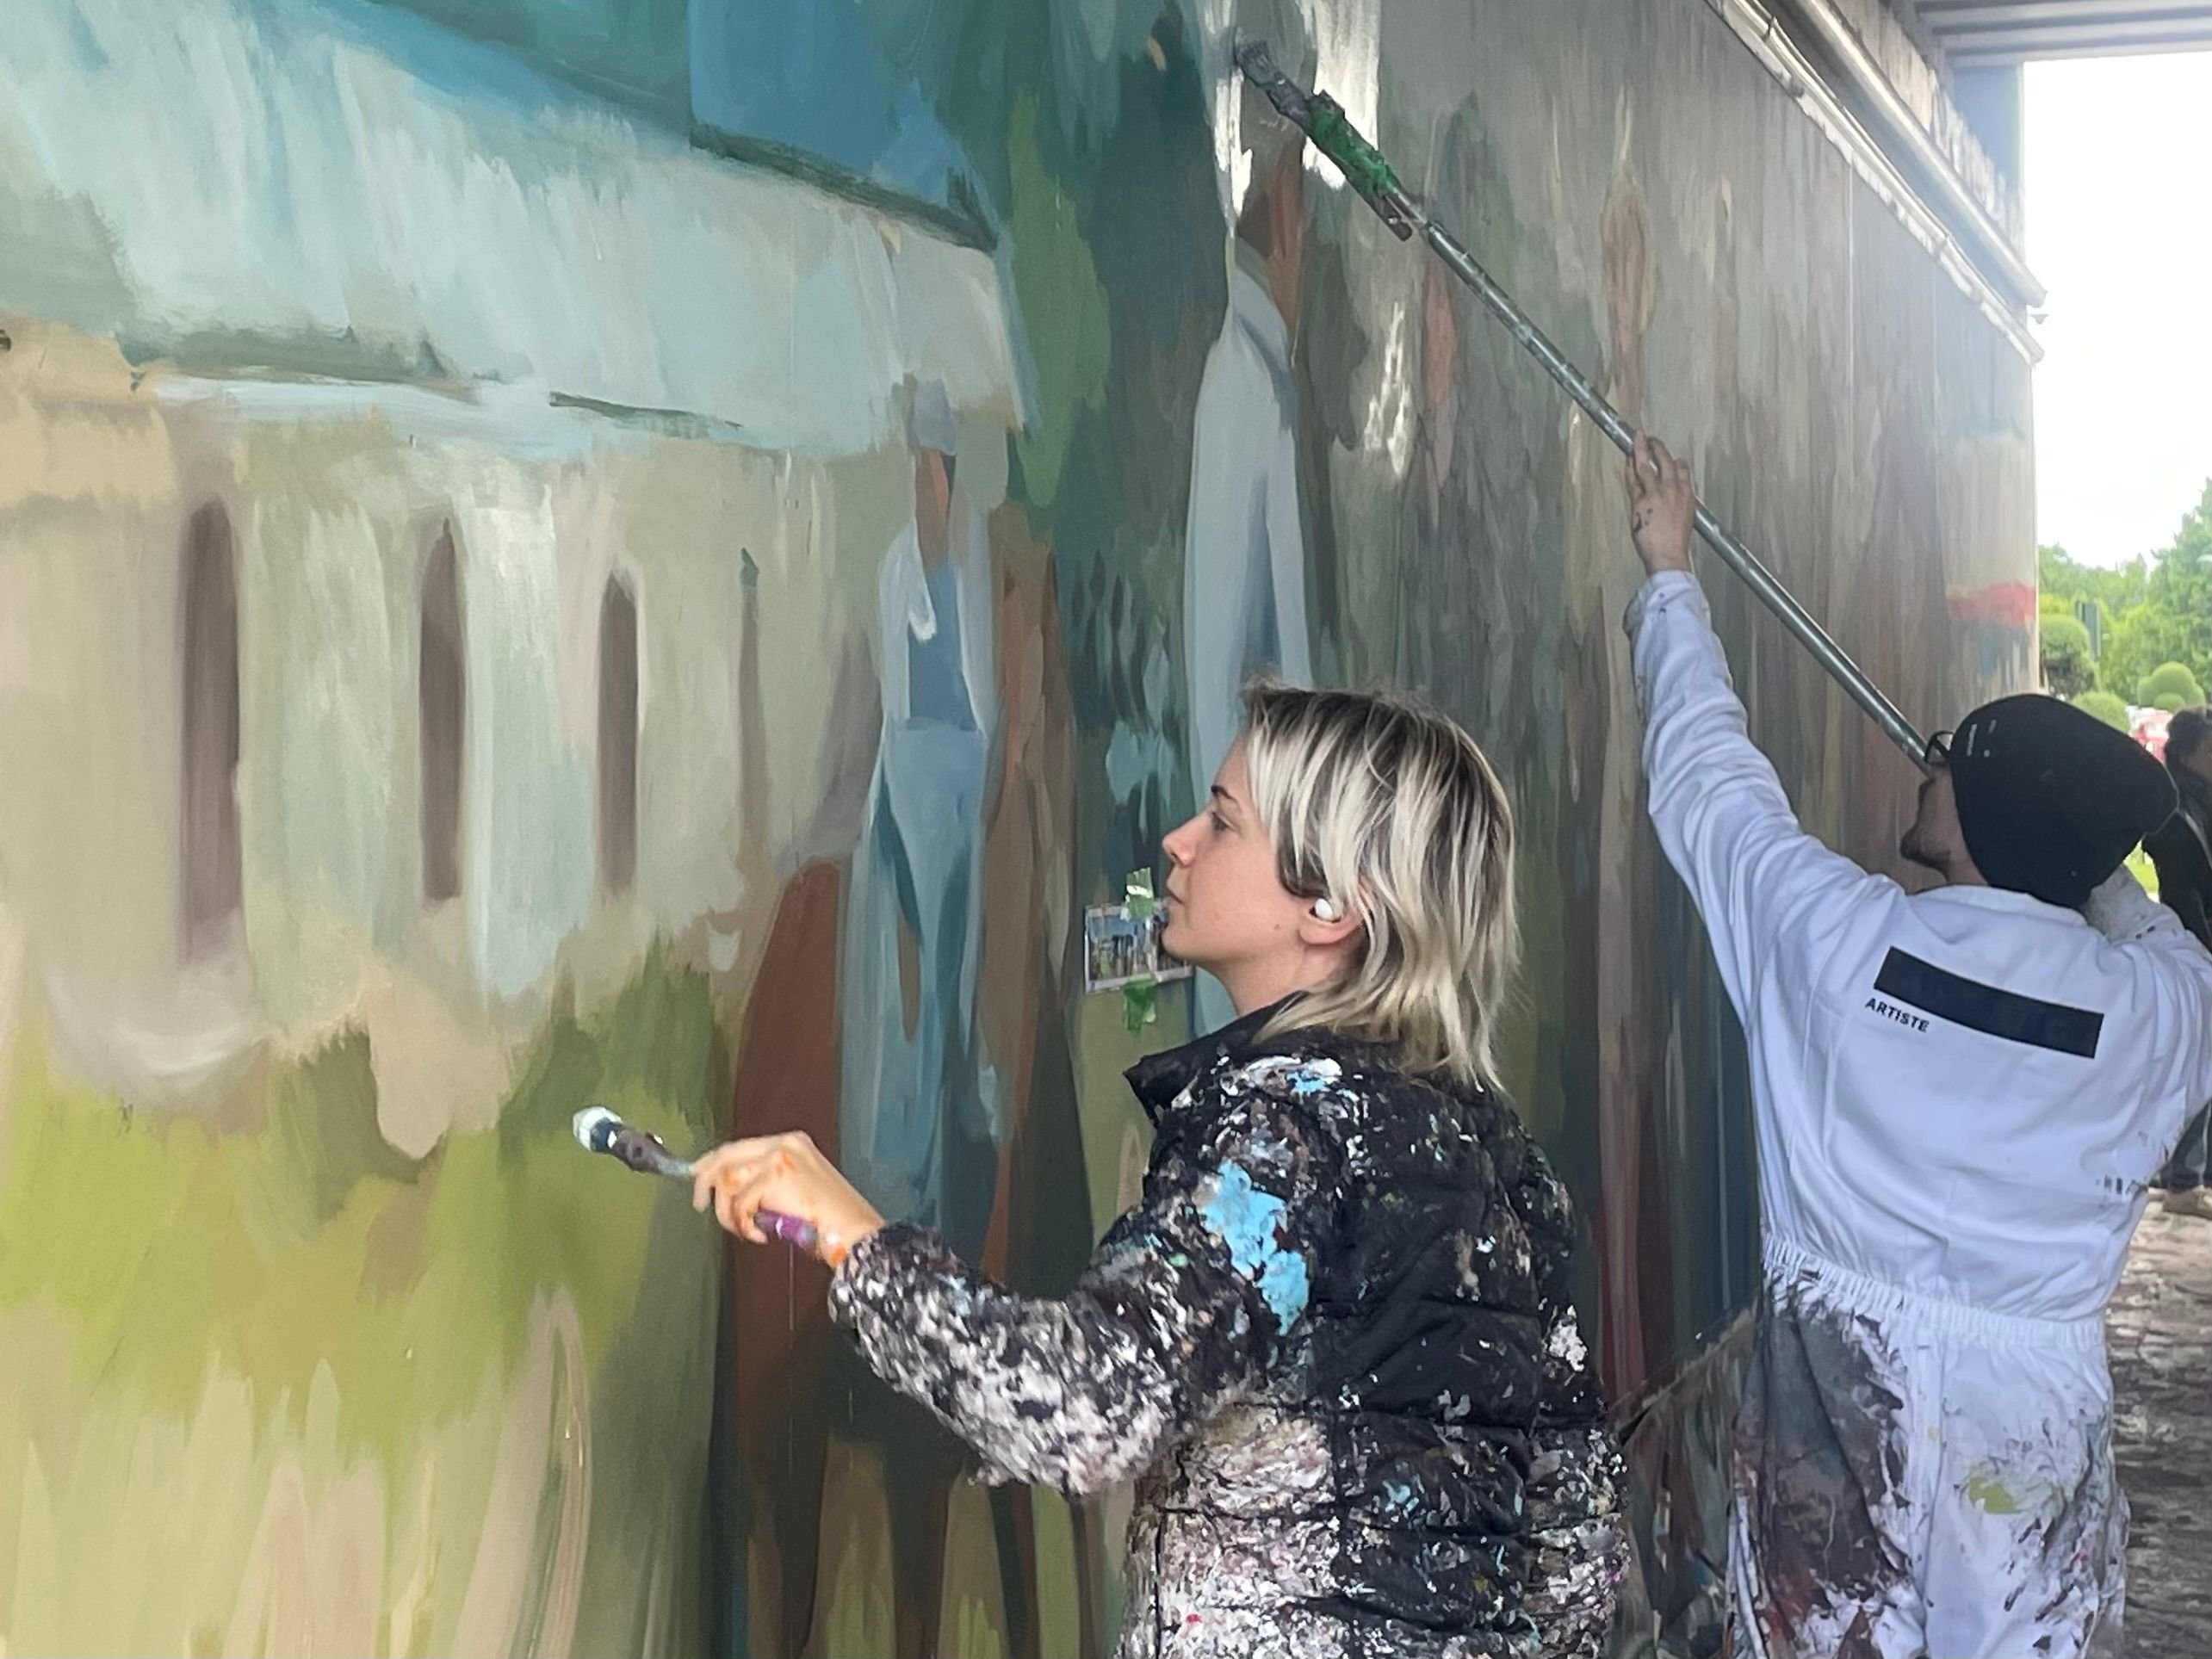 L'artiste espagnole Alba Fabre Sacristan est venue redonner de la vie aux deux fresques murales qui accueillent les visiteurs. LP/Samuel Barbotin